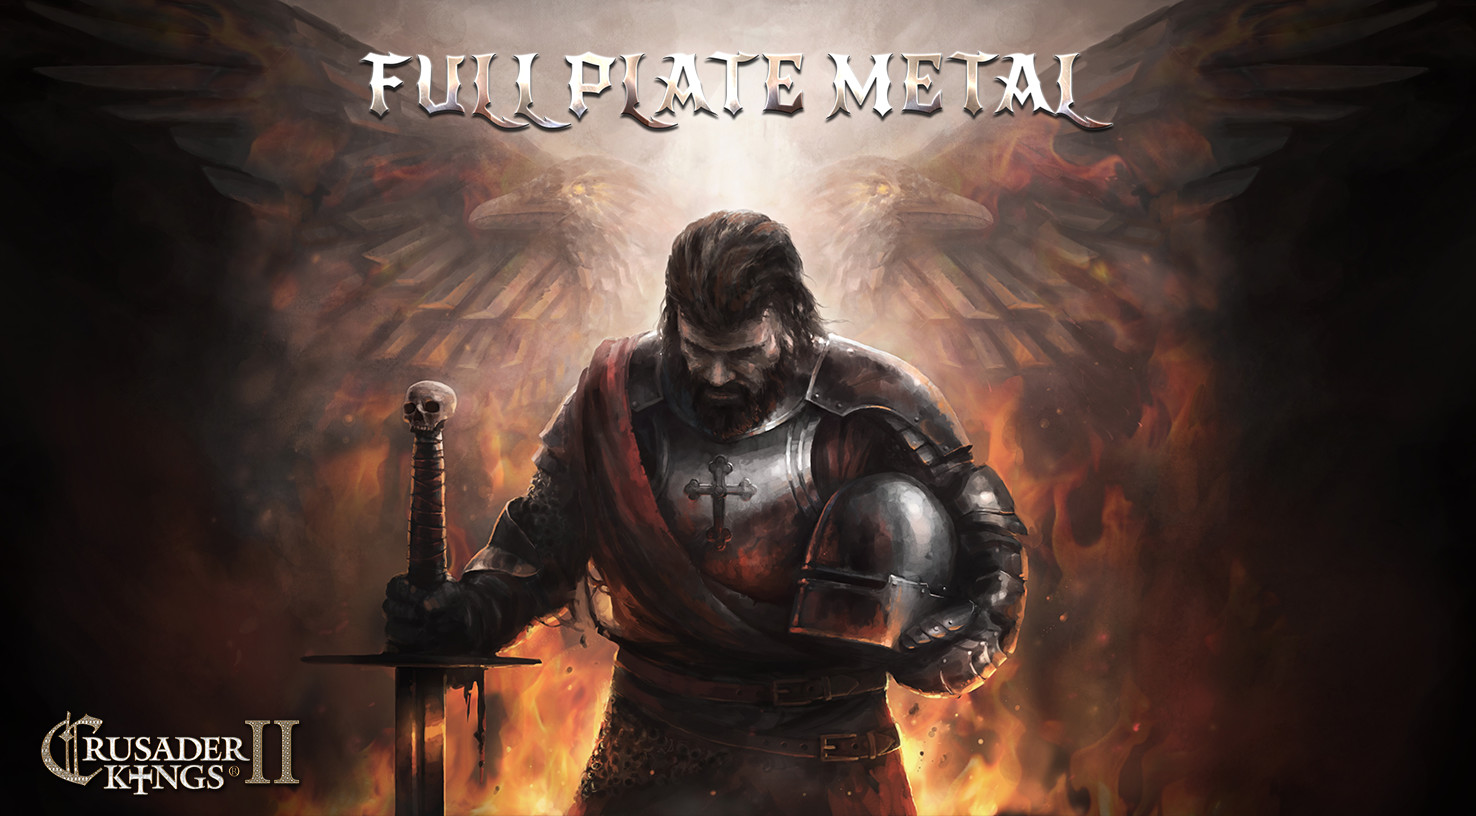 Crusader Kings II - Full Plate Metal DLC Steam CD Key [$ 1.84]